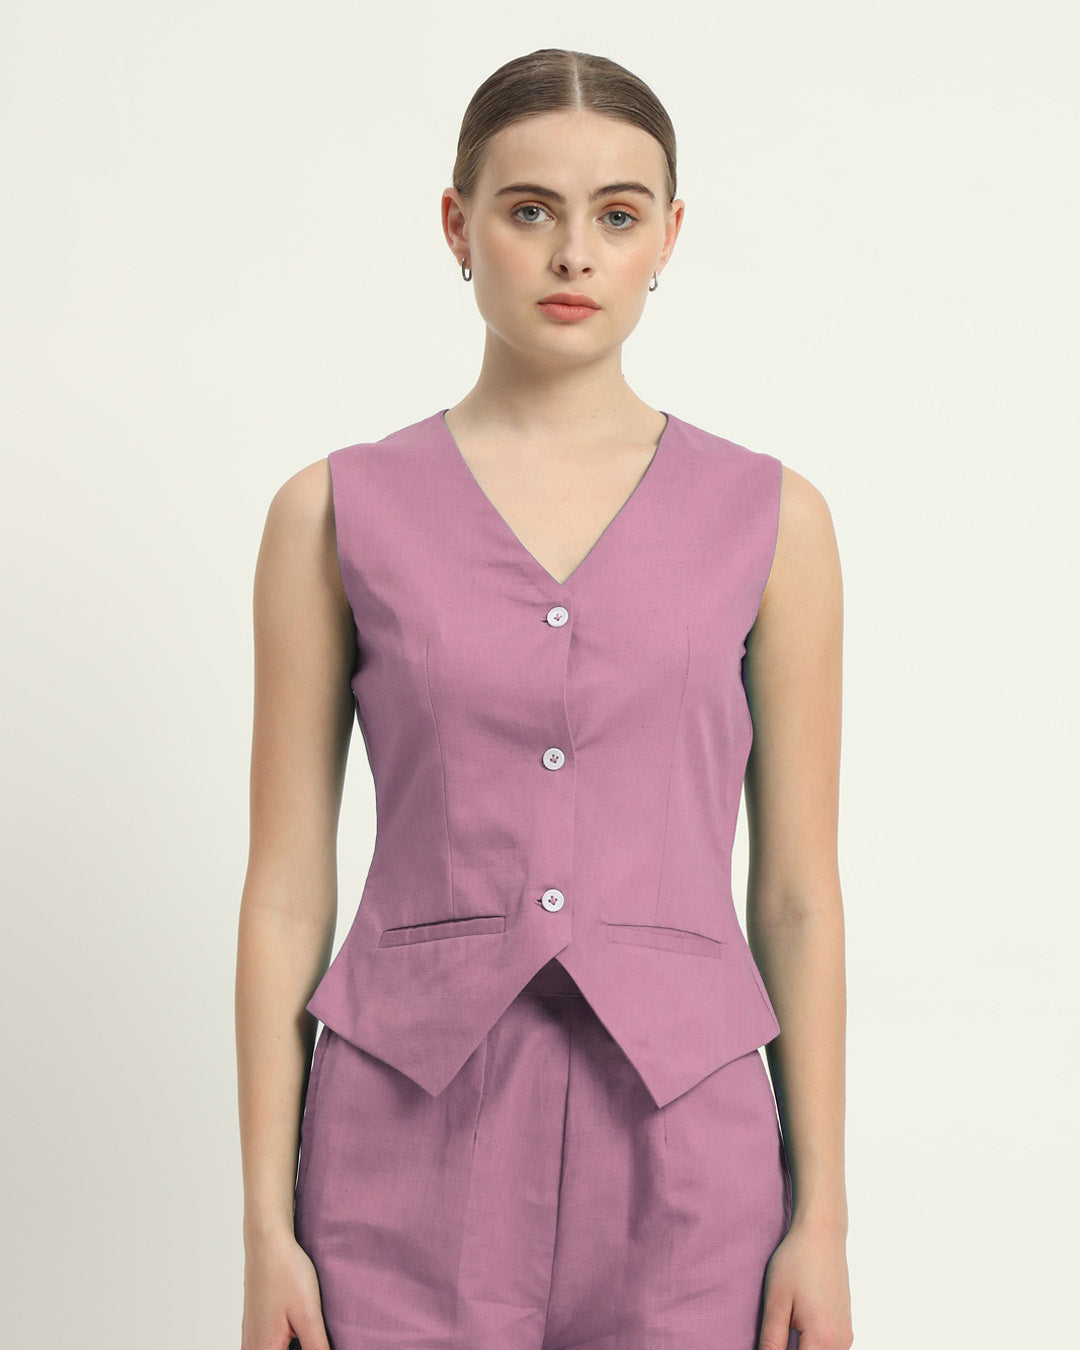 Shorts Matching Set Purple Swirl Downtown Diva Vest